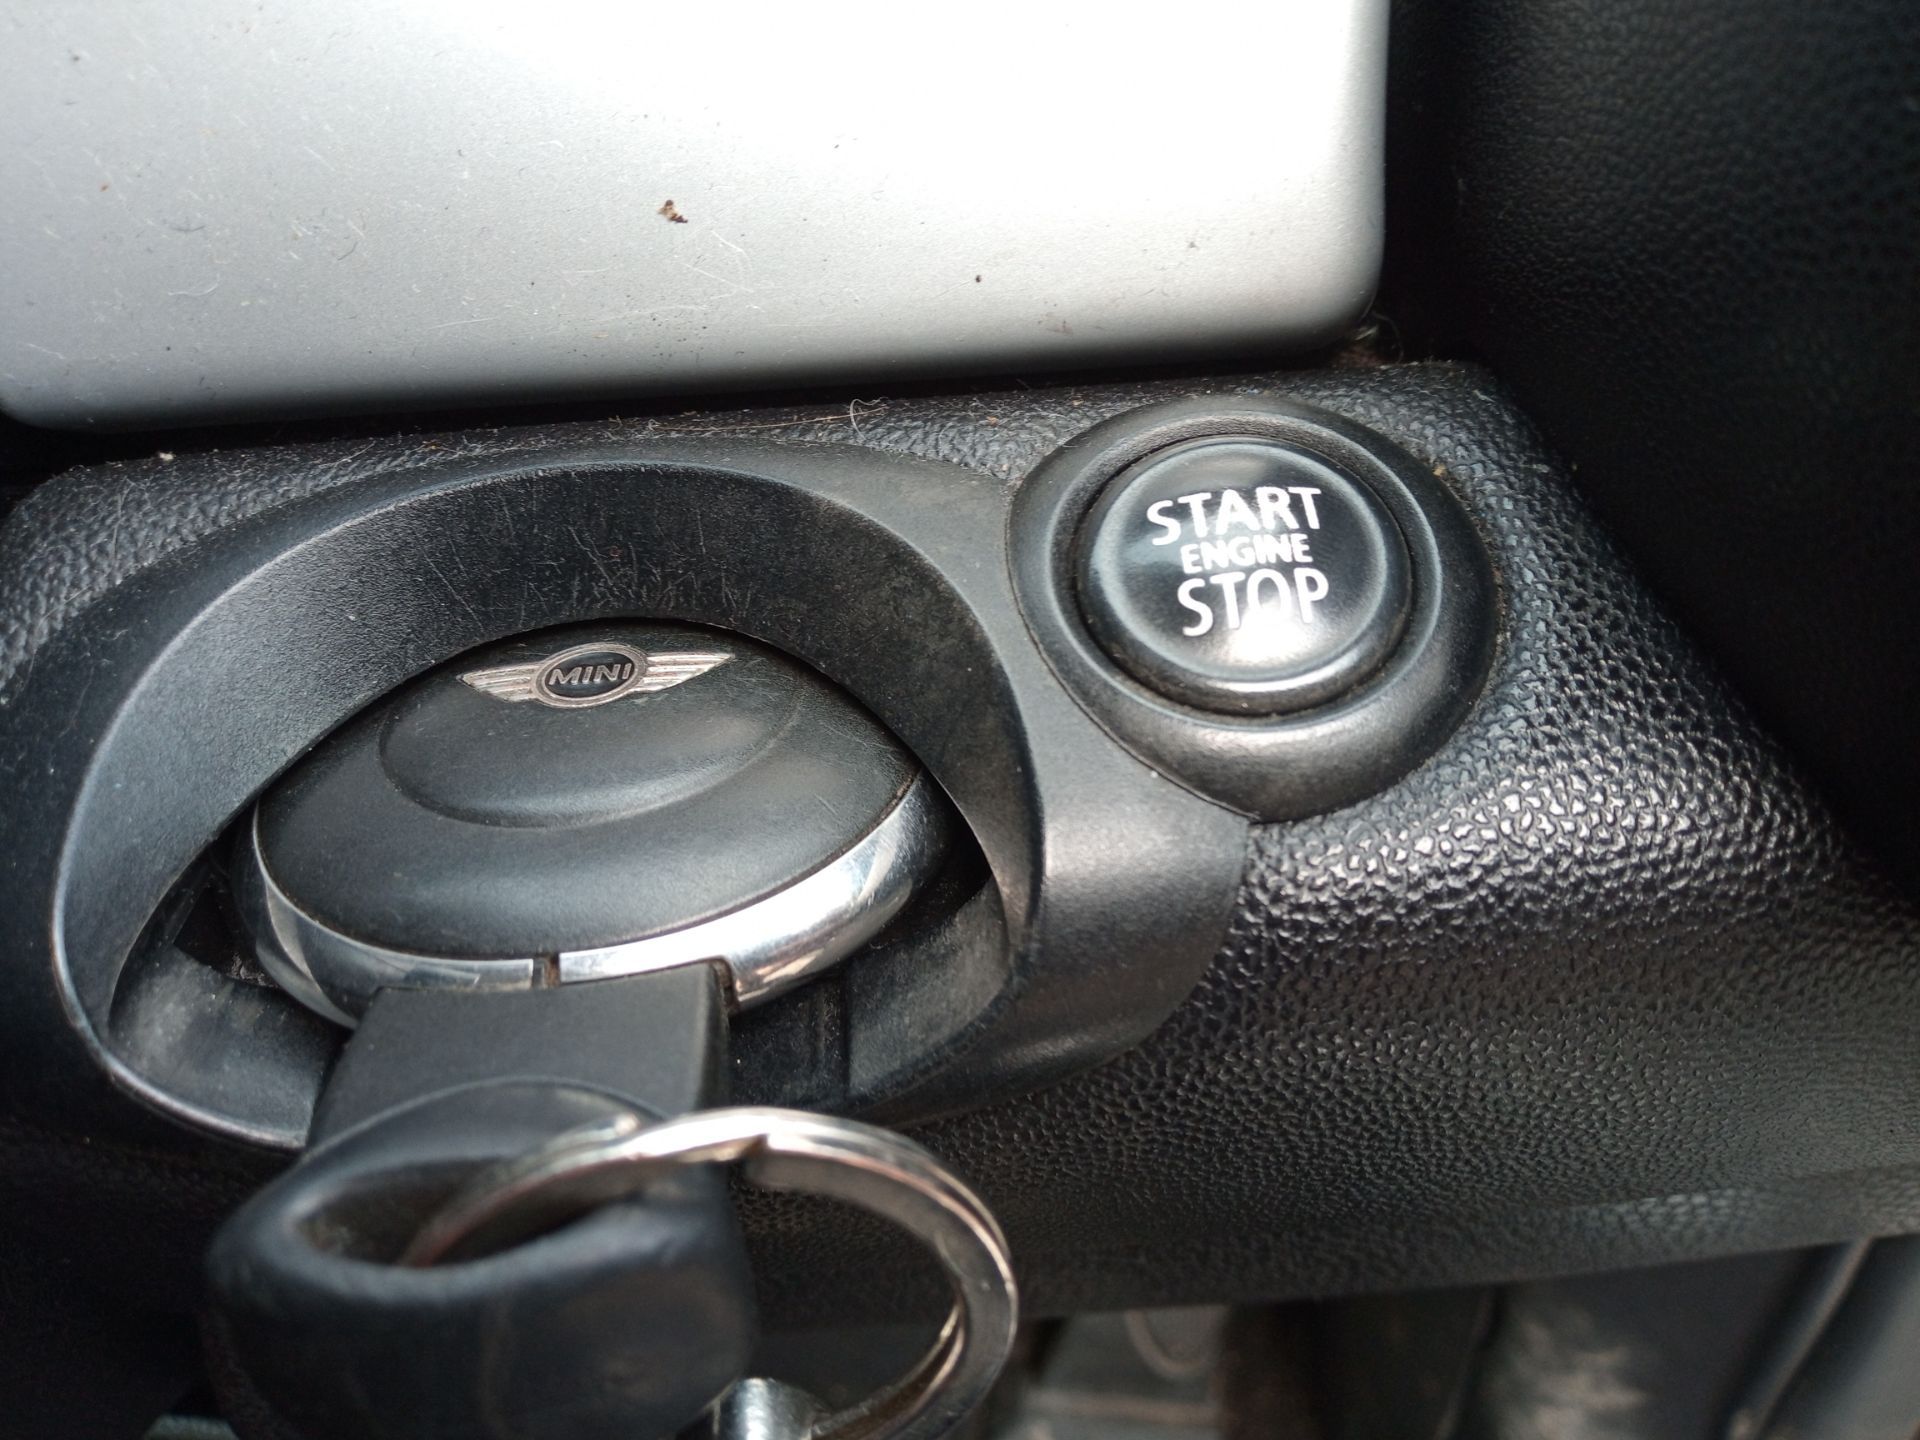 2011 Mini Cooper D DT 113 Diesel Hatchback, 154,997 MILES *NO VAT* - Image 16 of 17